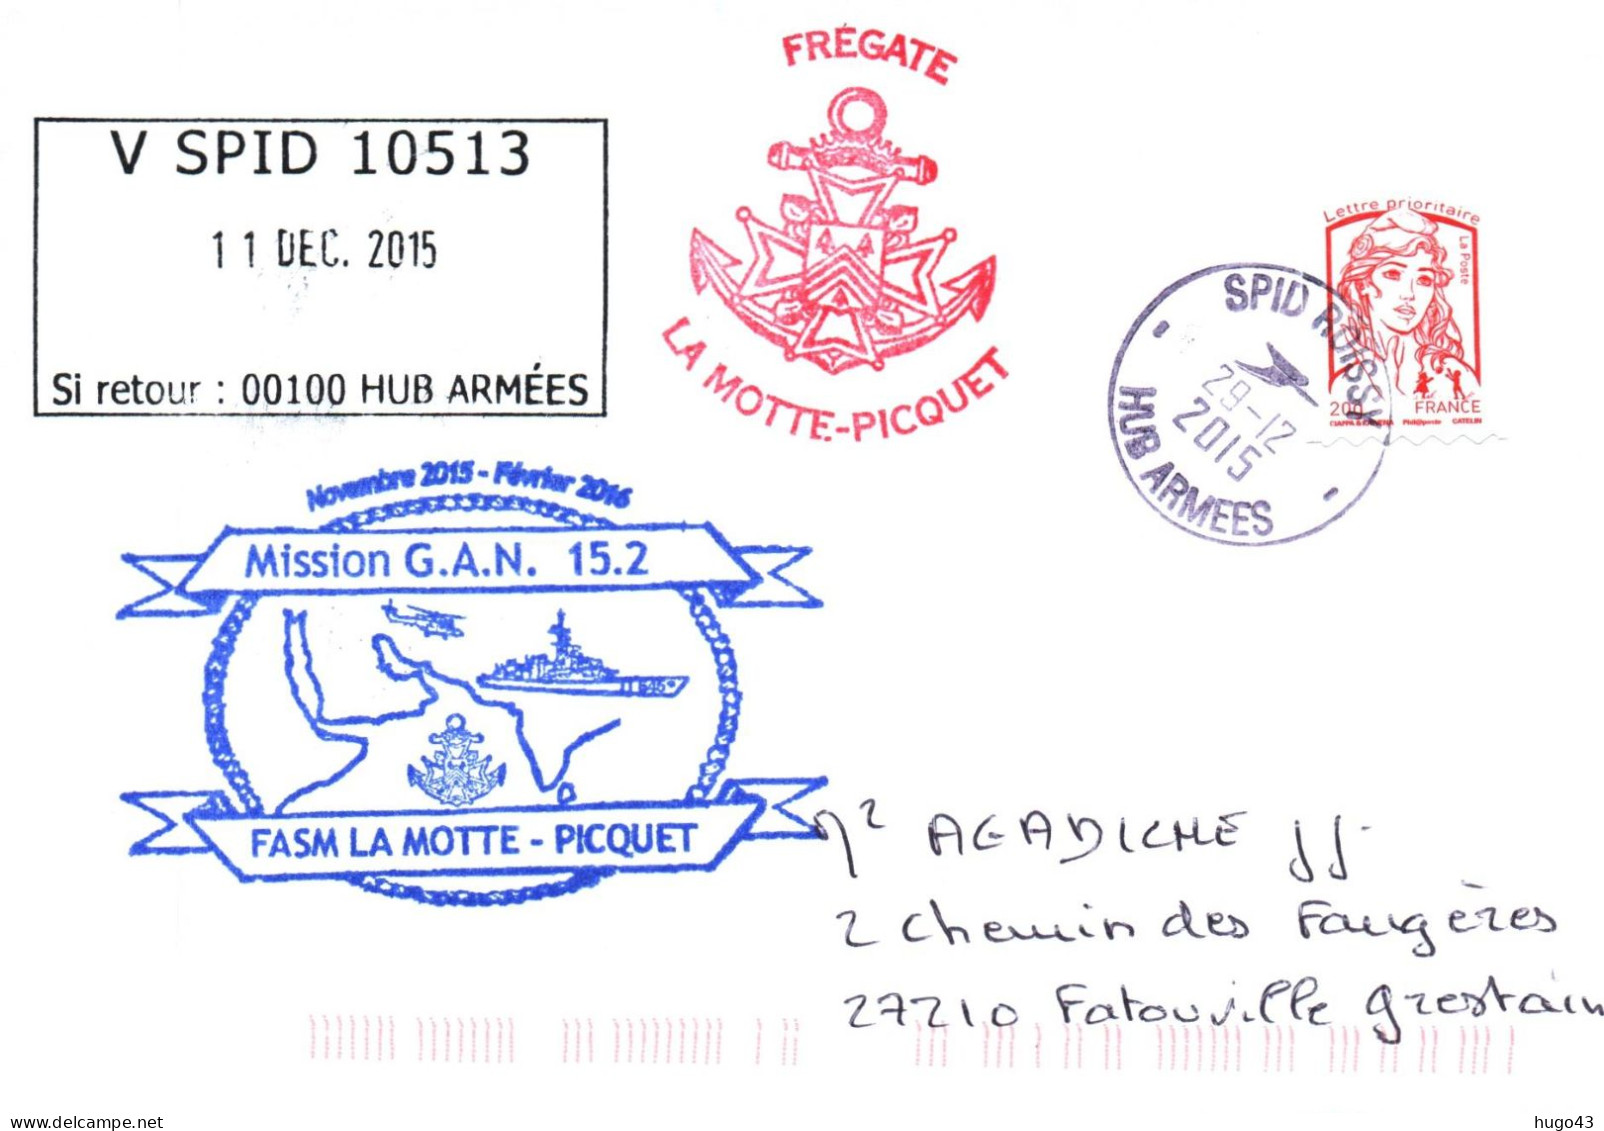 ENVELOPPE AVEC CACHET FREGATE LA MOTTE PICQUET - MISSION G.A.N. 15.2 - SPID ROISSY LE 29 DECEMBRE 2015 - Naval Post